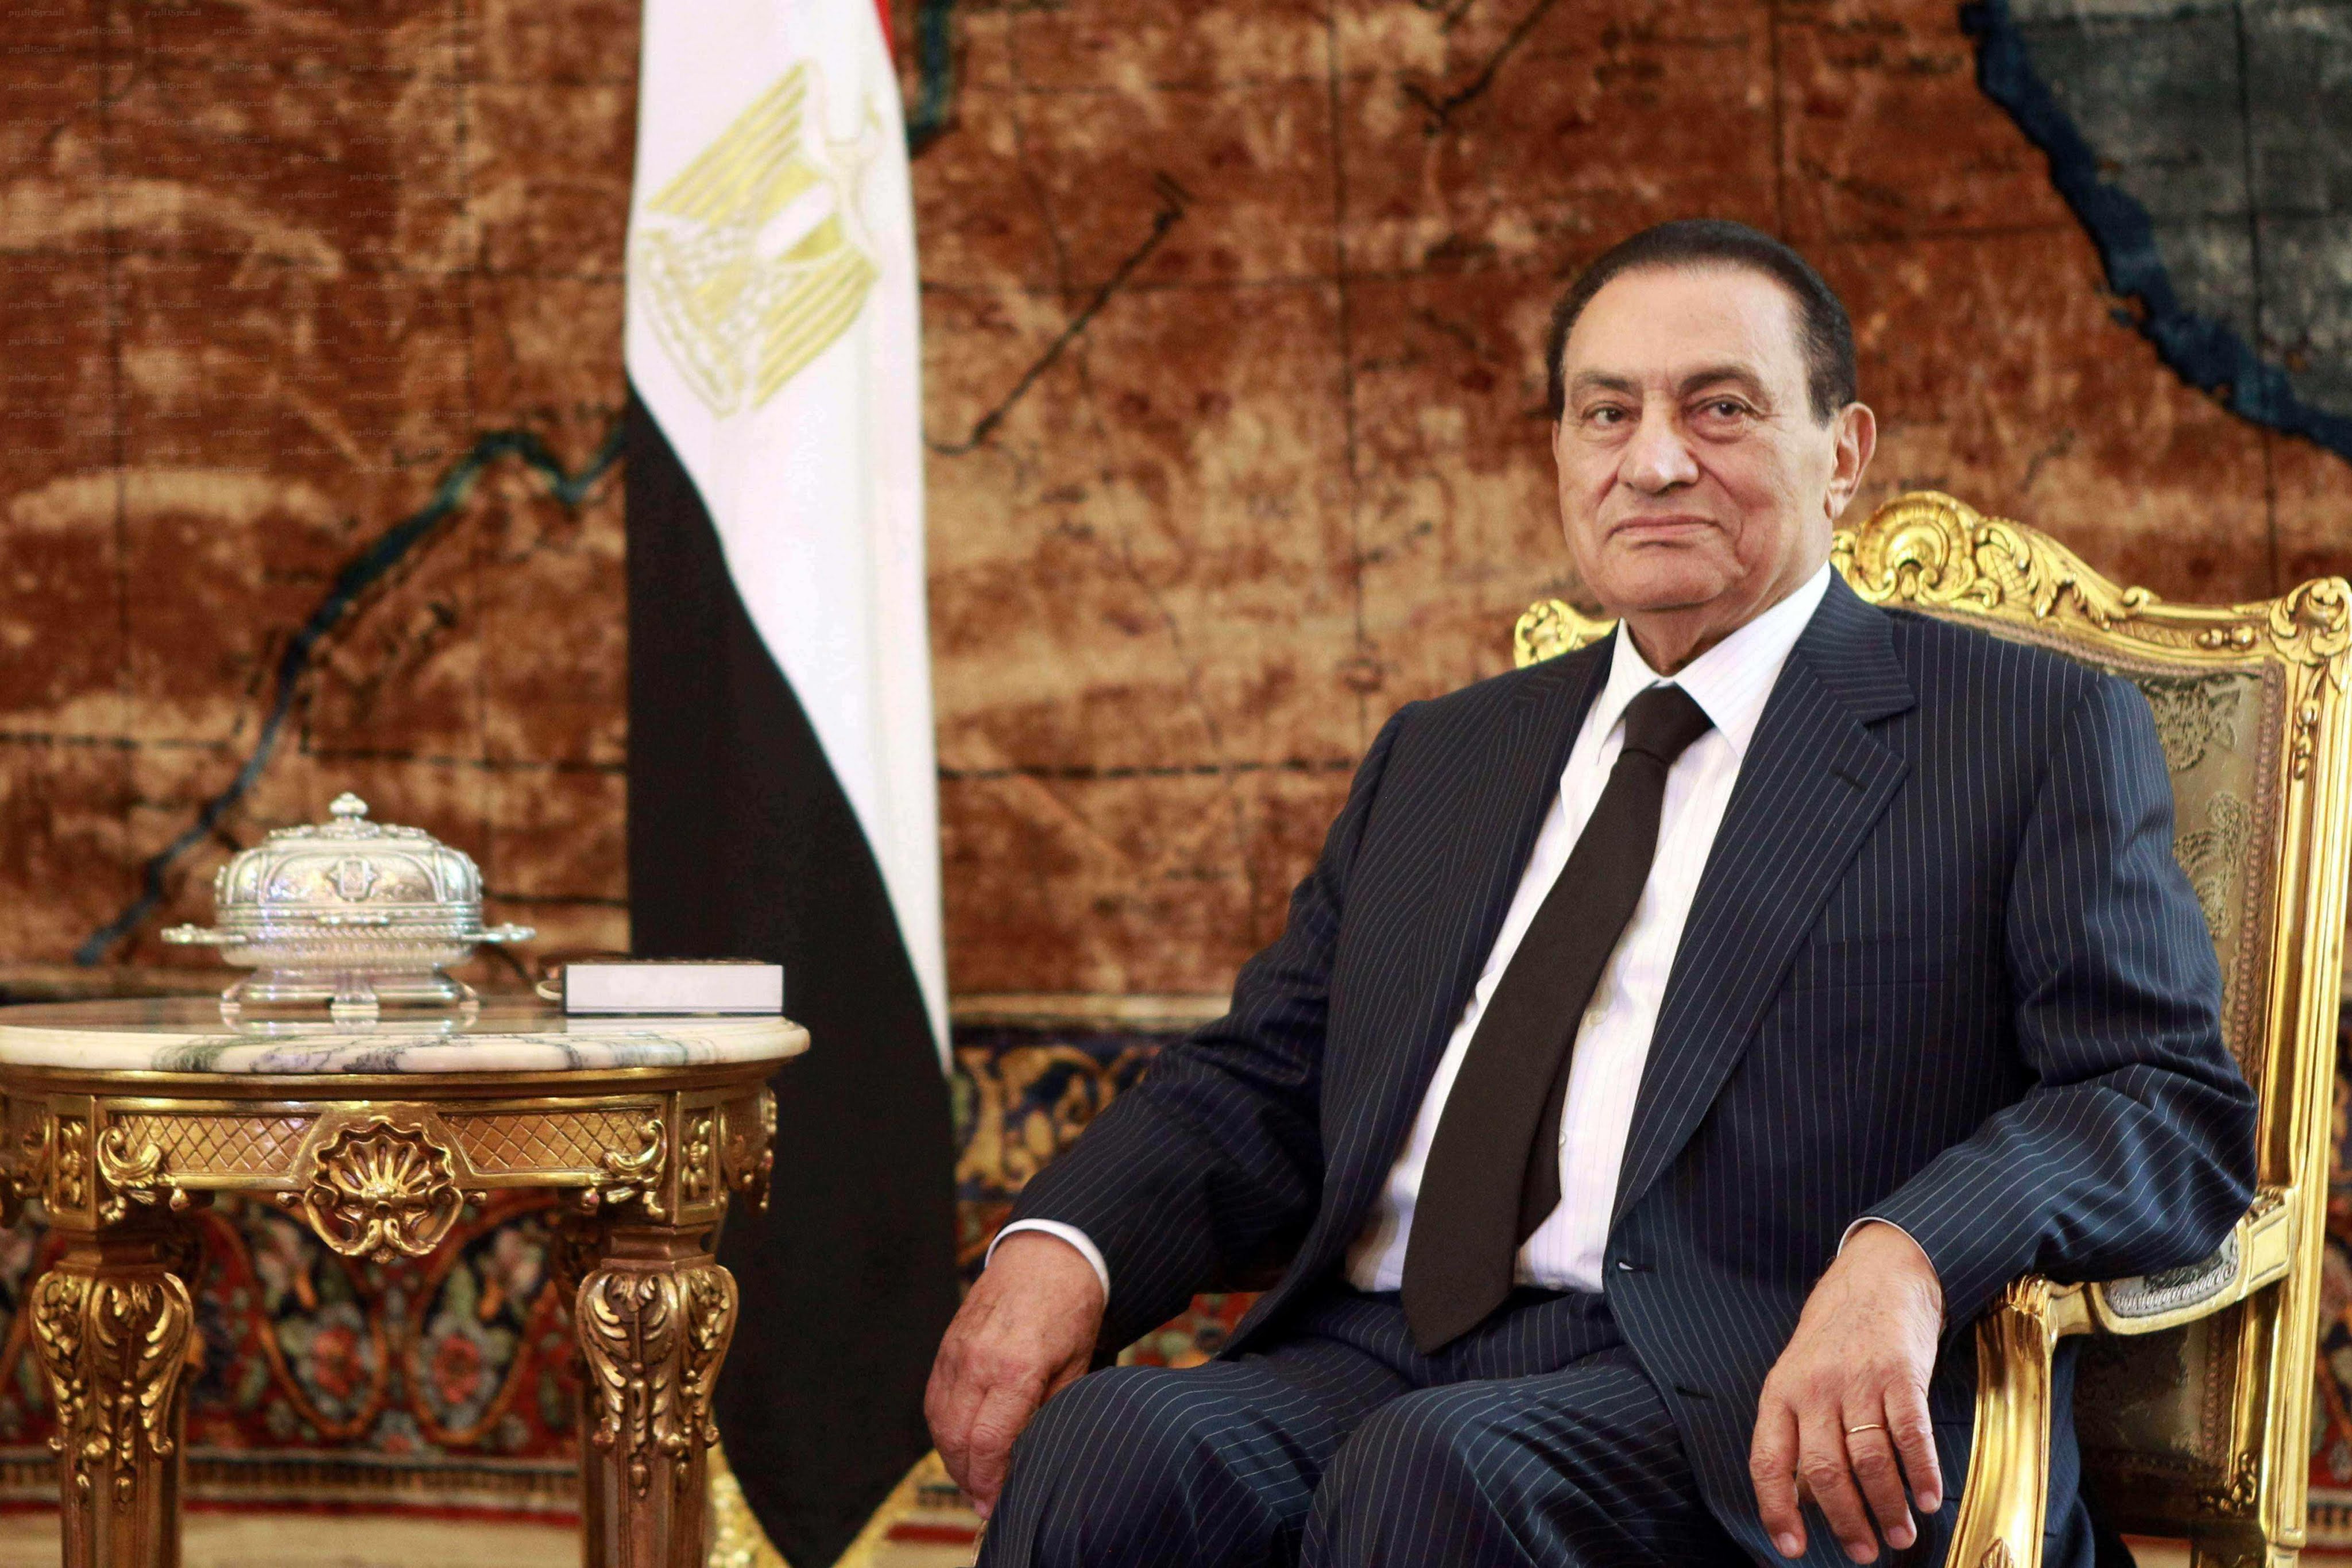 هاشتاج “وفاة مبارك” يتصدر تويتر في عدة دول عربية.. ووكالات الأنباء تكشف تفاصيل ما حدث